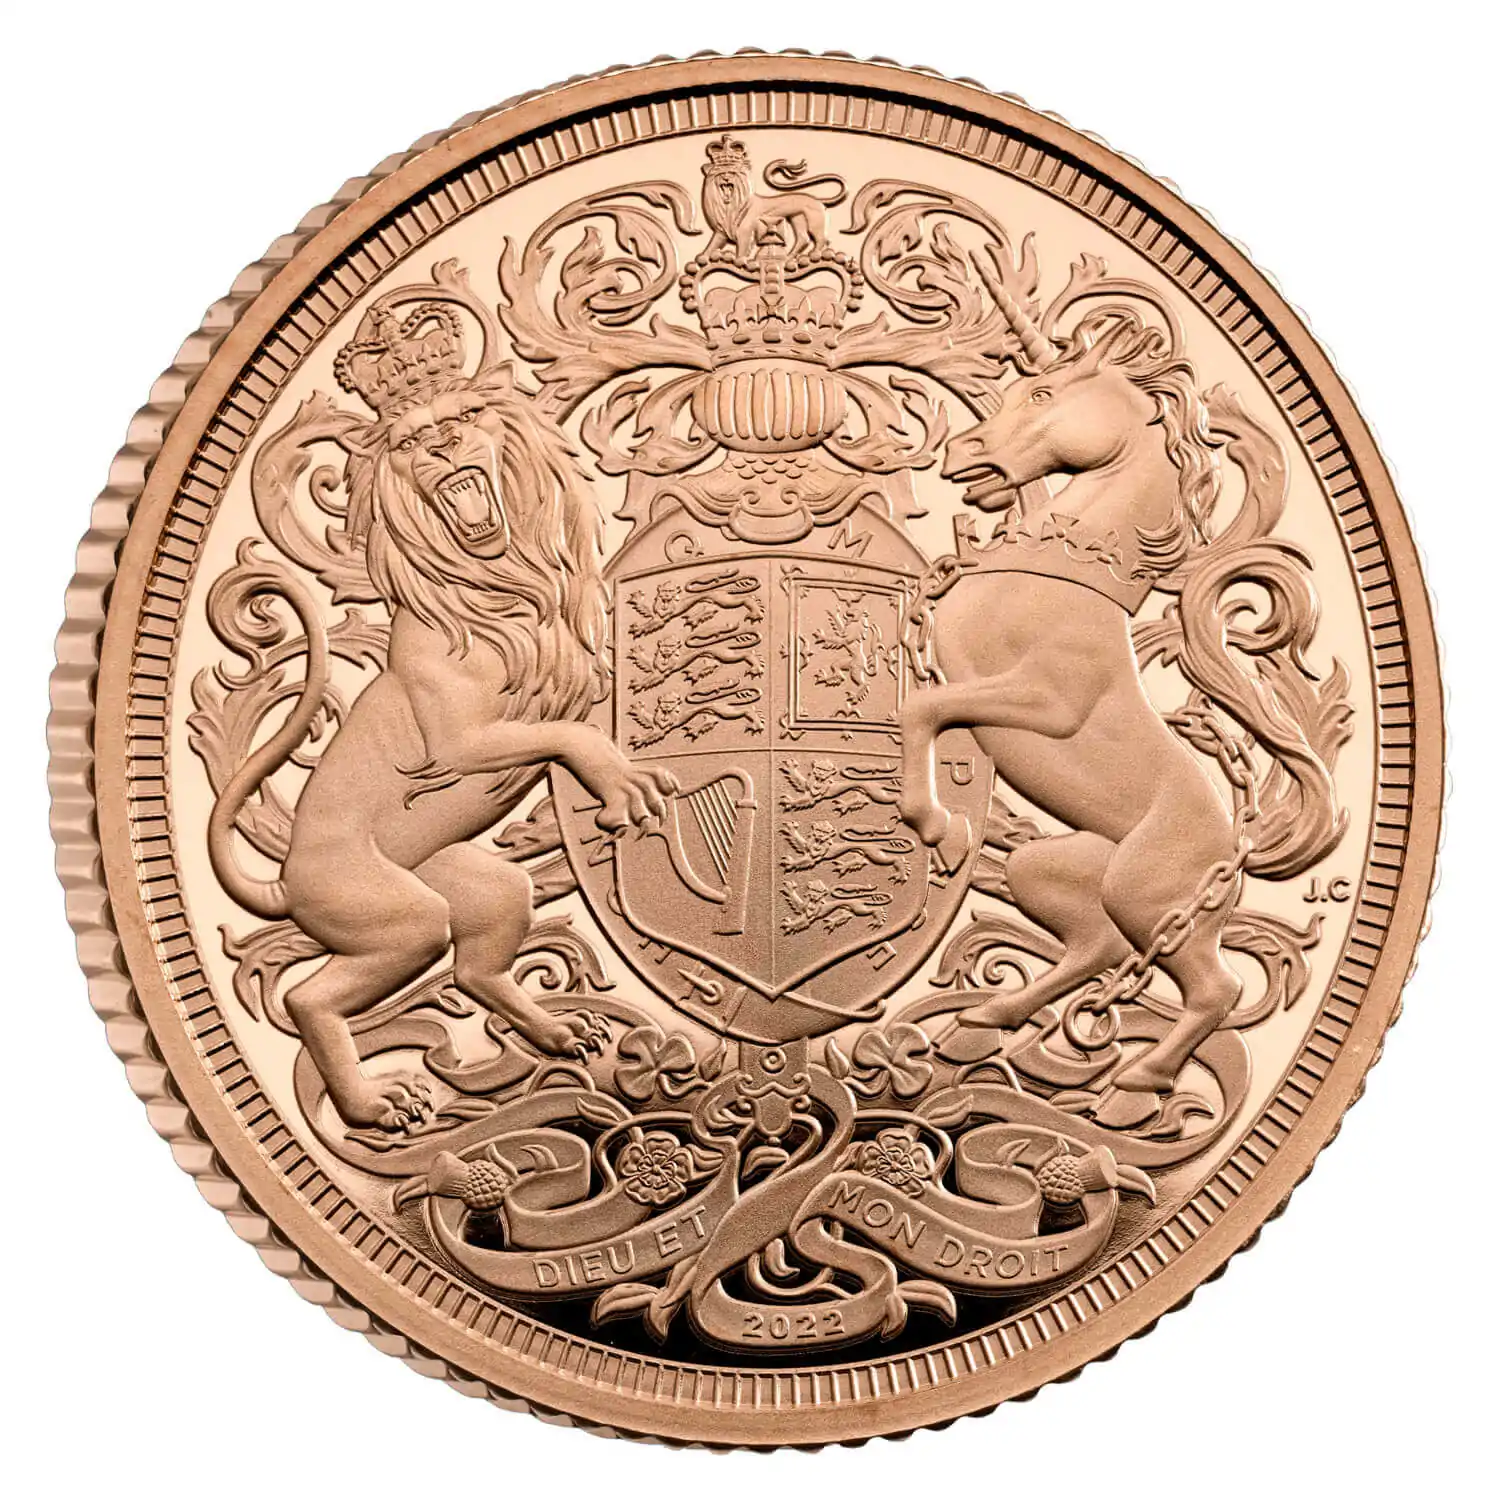 Złoty Brytyjski Suweren 2022 Memoriał Królowej Elżbiety II Proof - złota moneta